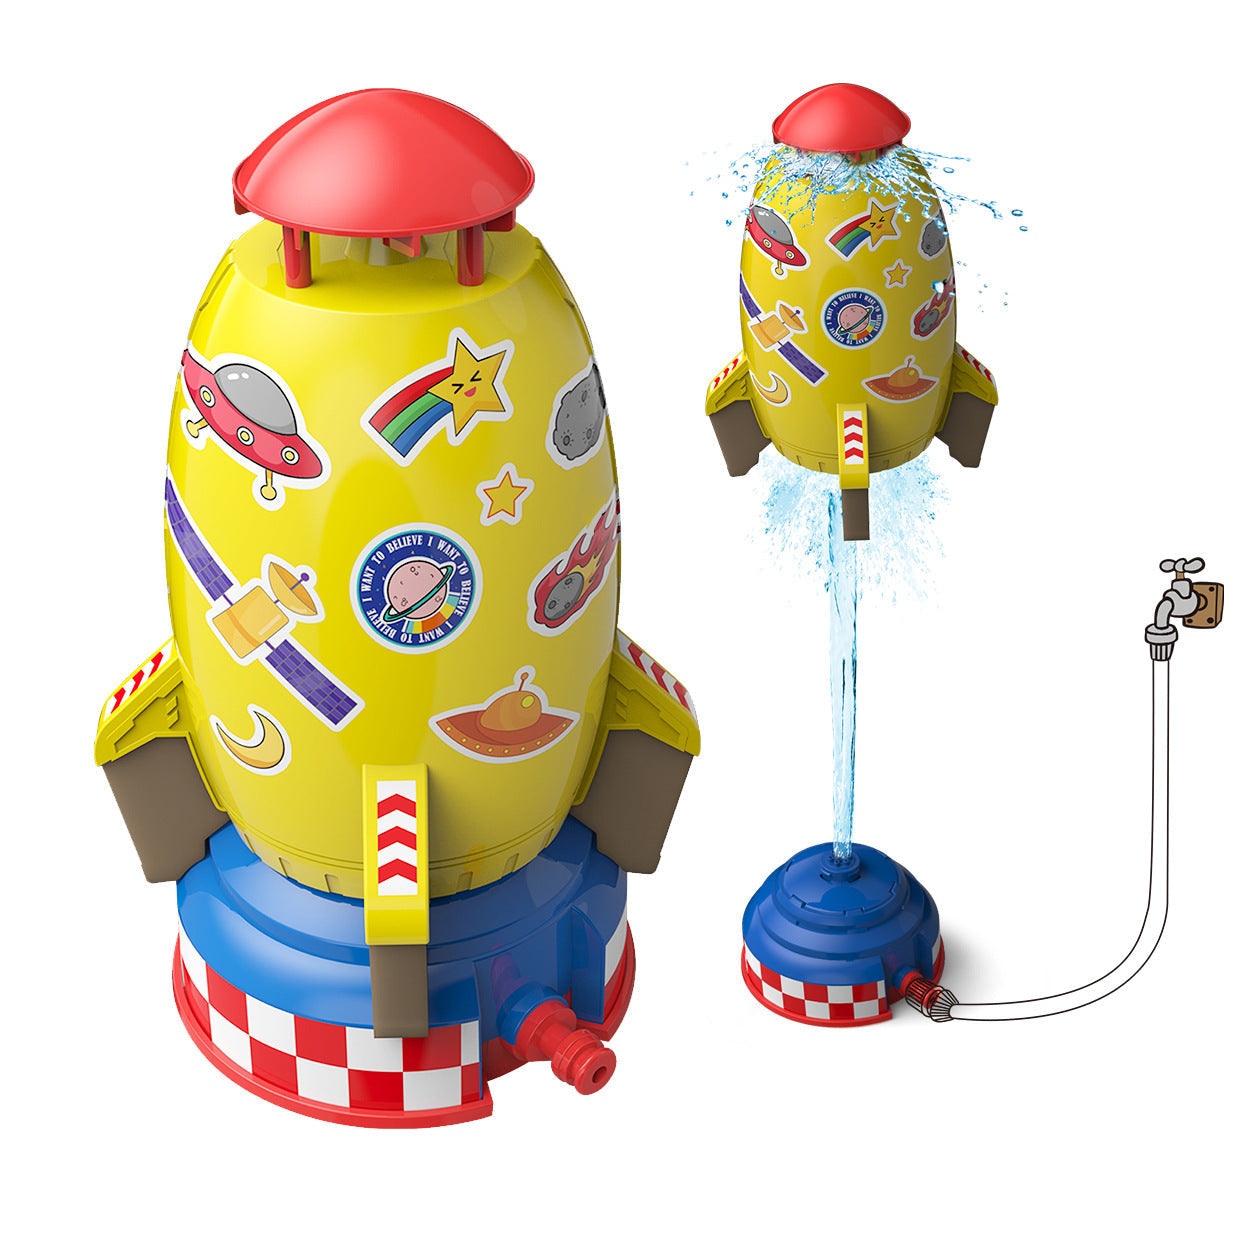 Rocket Launcher Toys Outdoor Rocket Water Pressure Lift Sprinkler